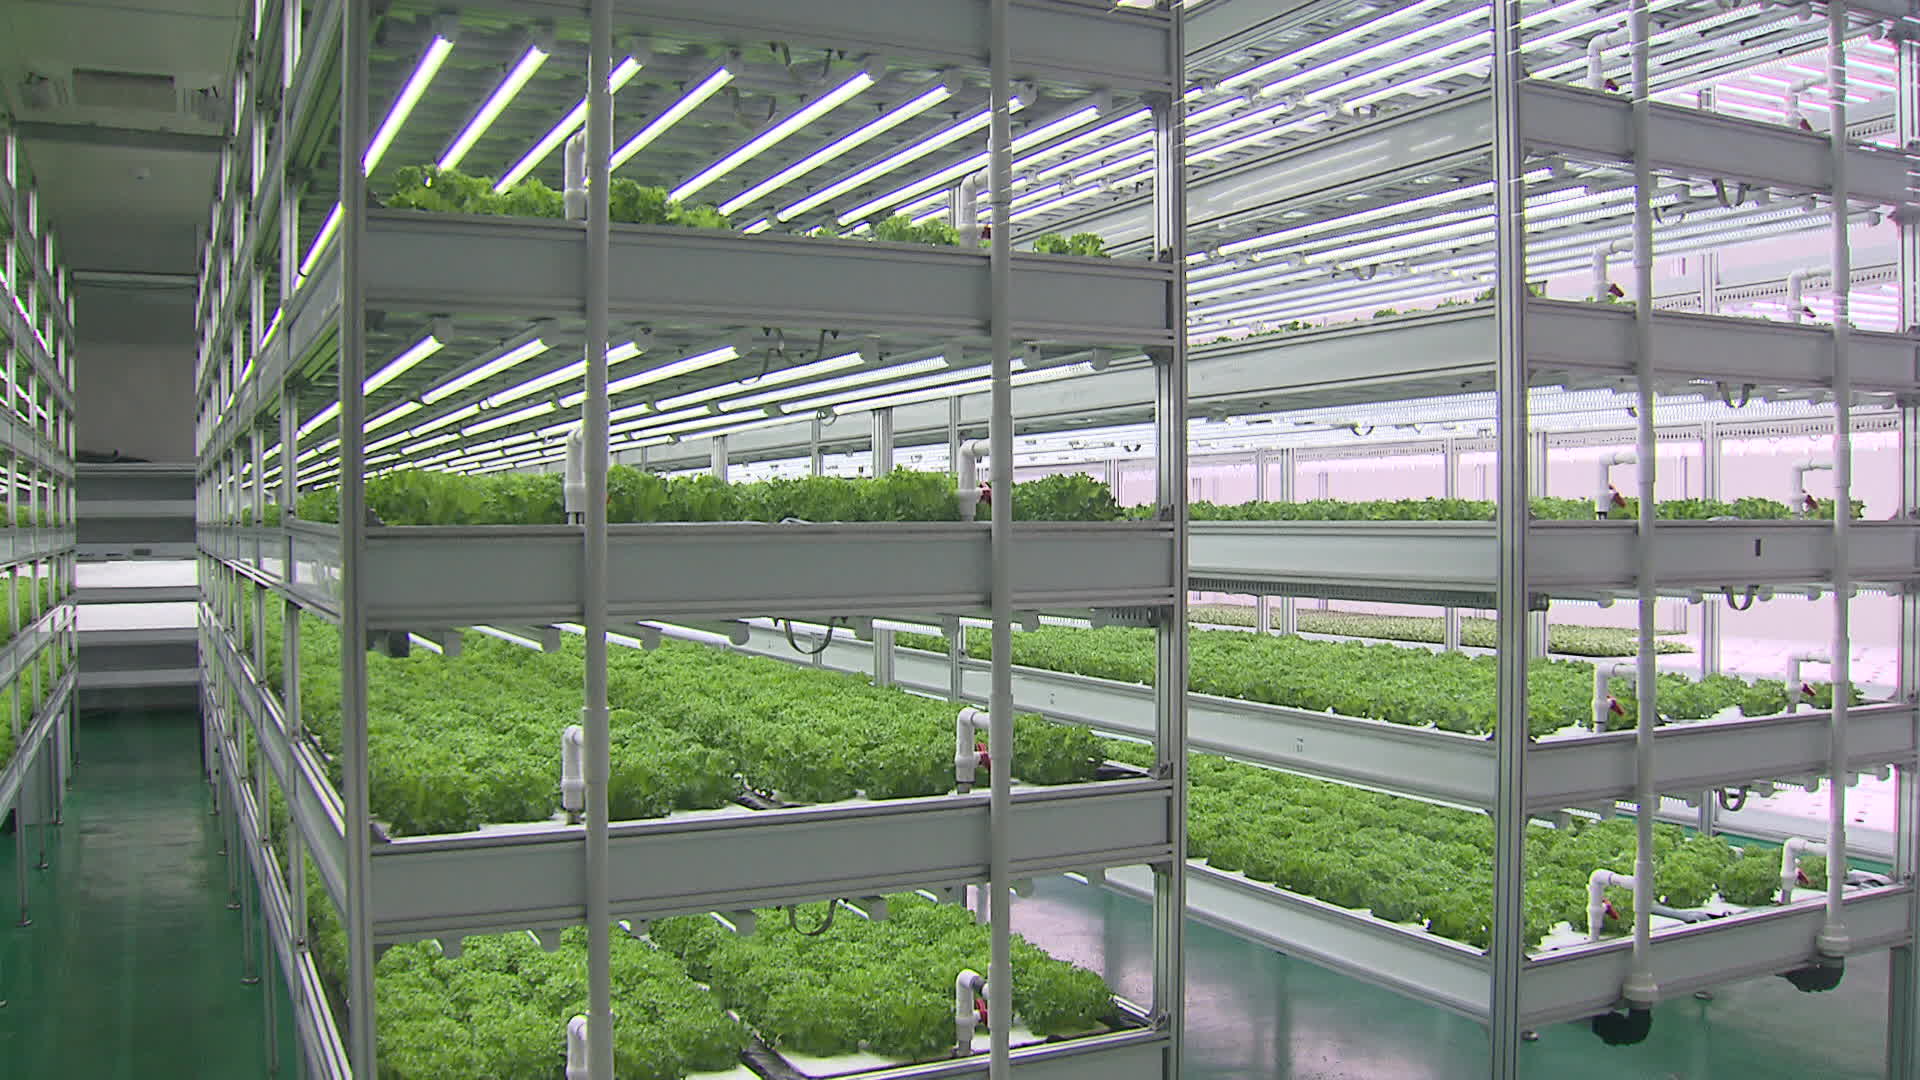 경기도 군포시에 있는 농심 스파트팜 연구소. 6층 재배단에서 엽채류를 키우는 수직농장을 운영하고 있다.  농심은  2022년 오만에 20만 달러 규모의 스마트팜을 수출한 바 있다.